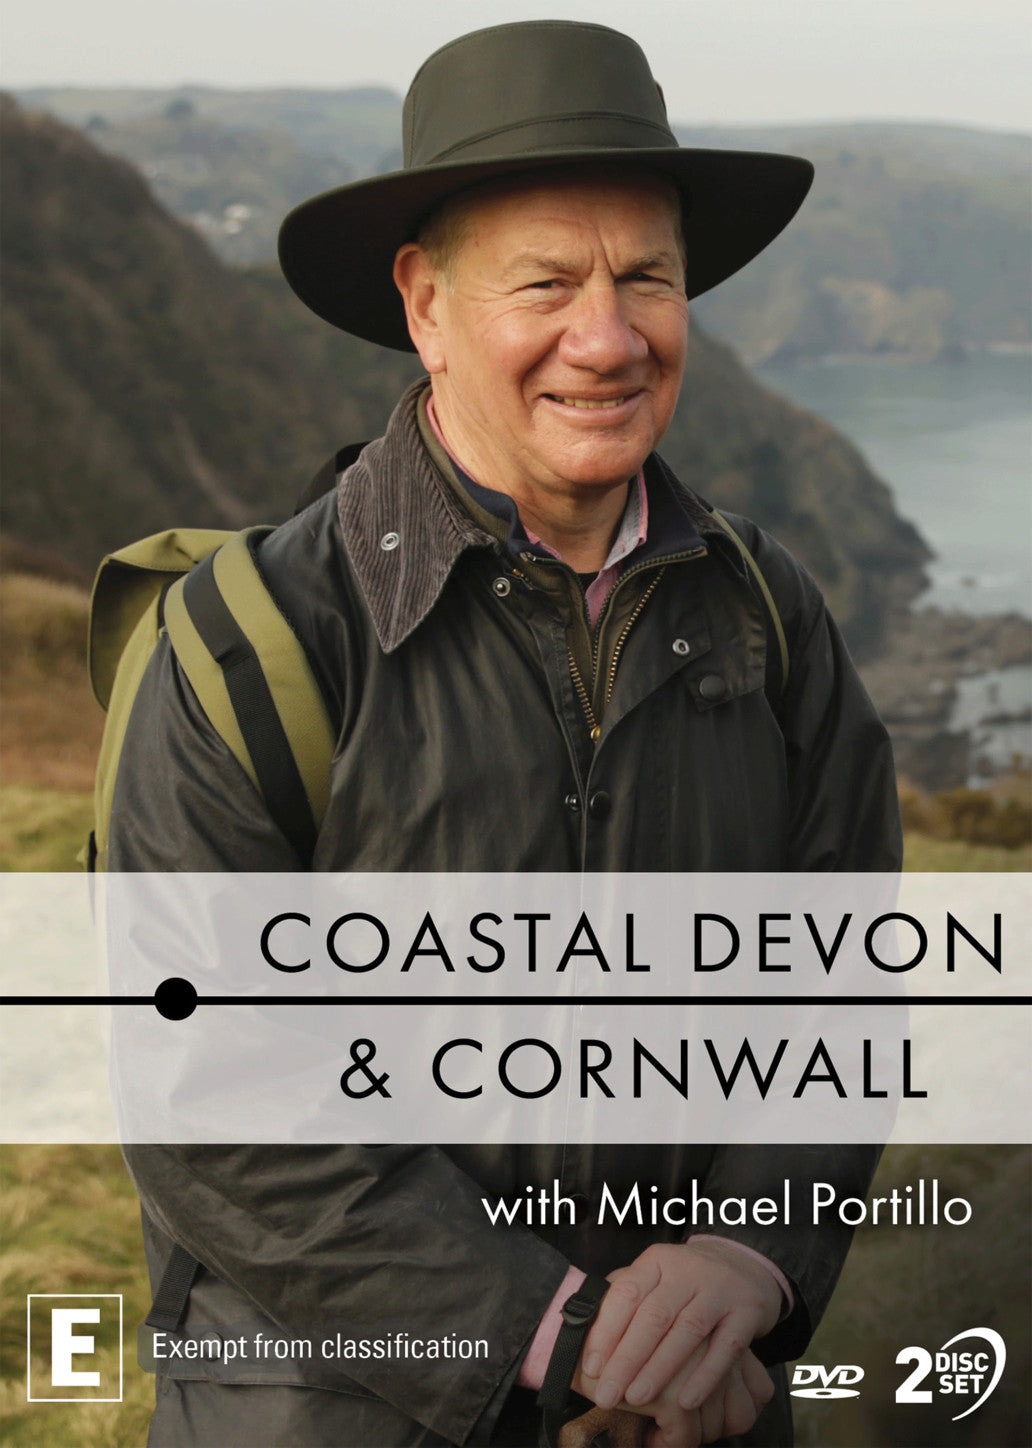 COASTAL DEVON & CORNWALL WITH MICHAEL PORTILLO